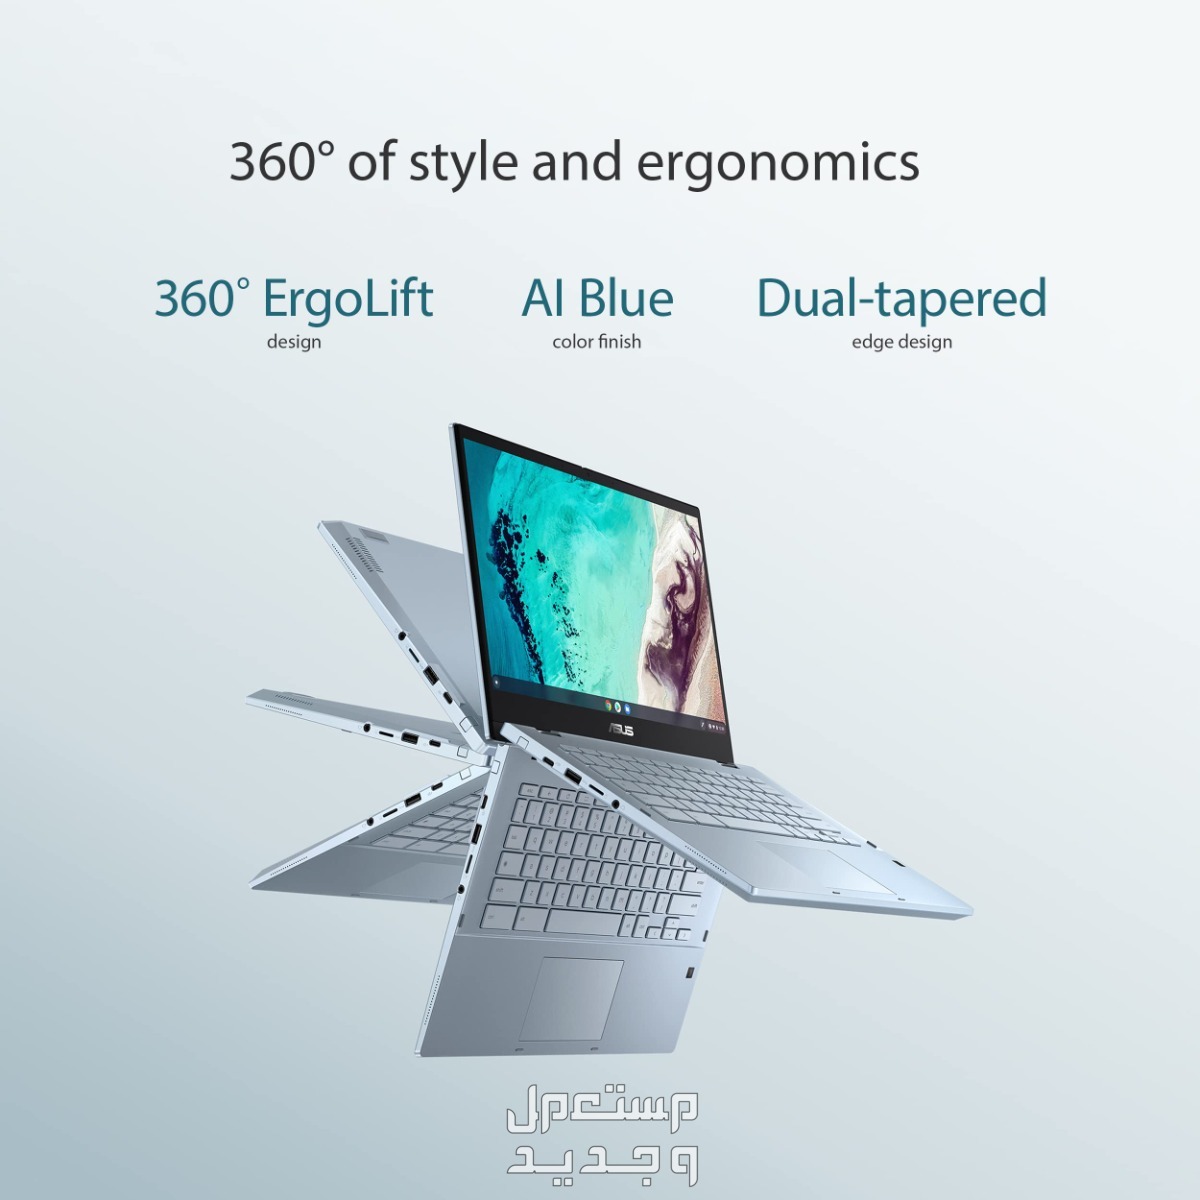 تعرف على أفضل لاب توب للبرمجة بسعر رخيص 2024 في الإمارات العربية المتحدة Asus Chromebook Flip CX3